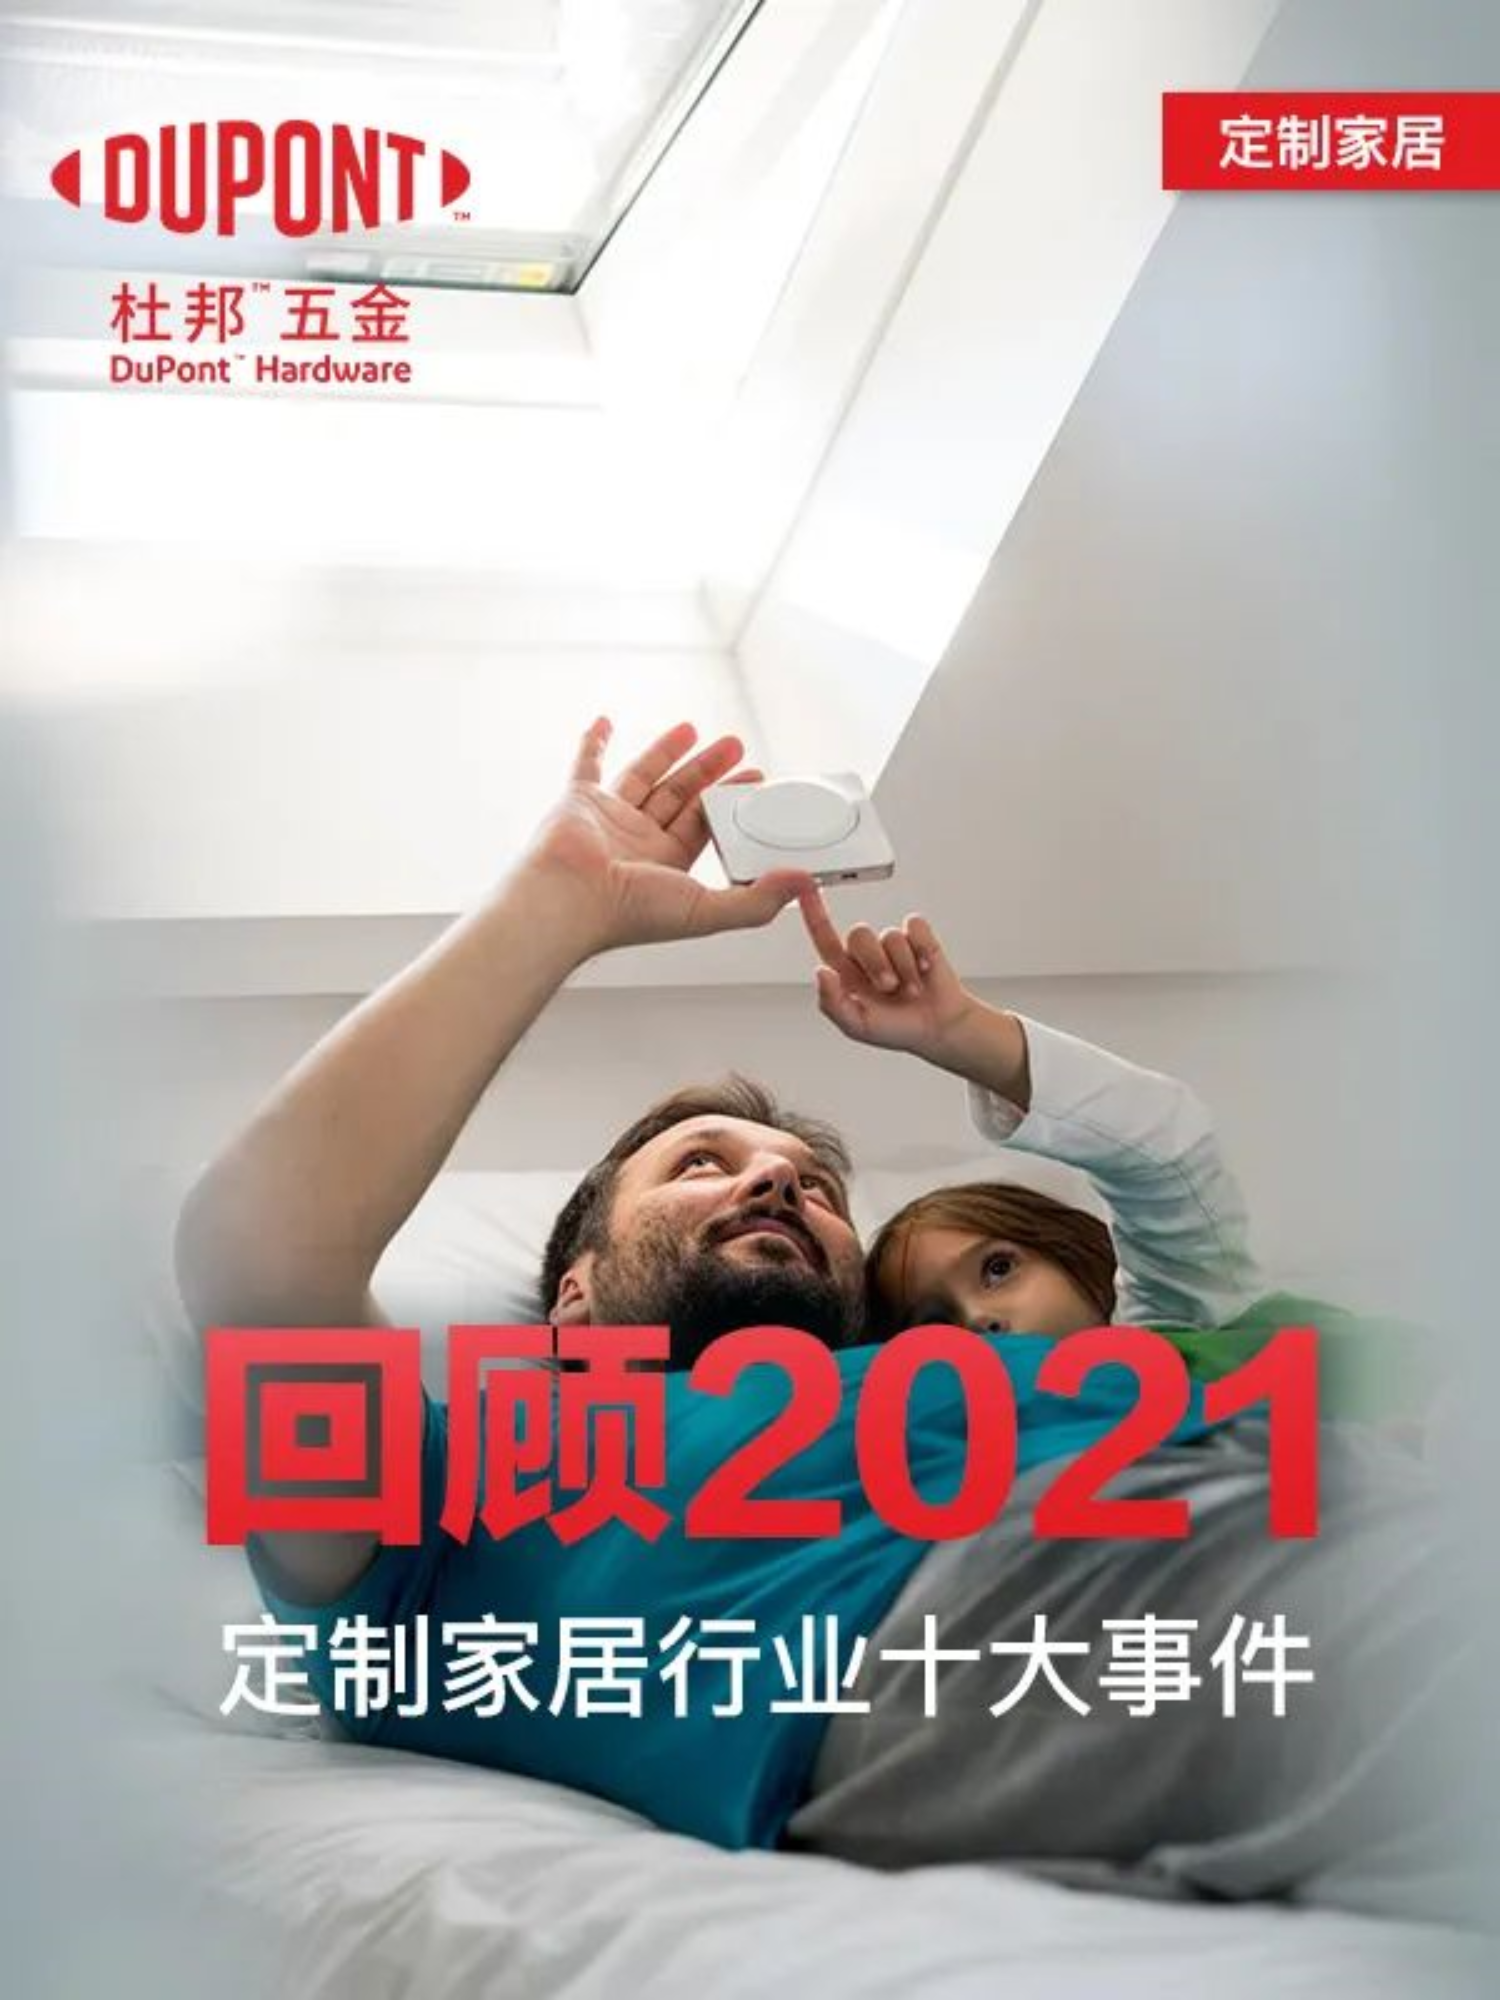 Gjennomgang av topp 10 tilpassede boliginnredninger i Kina i 2021!